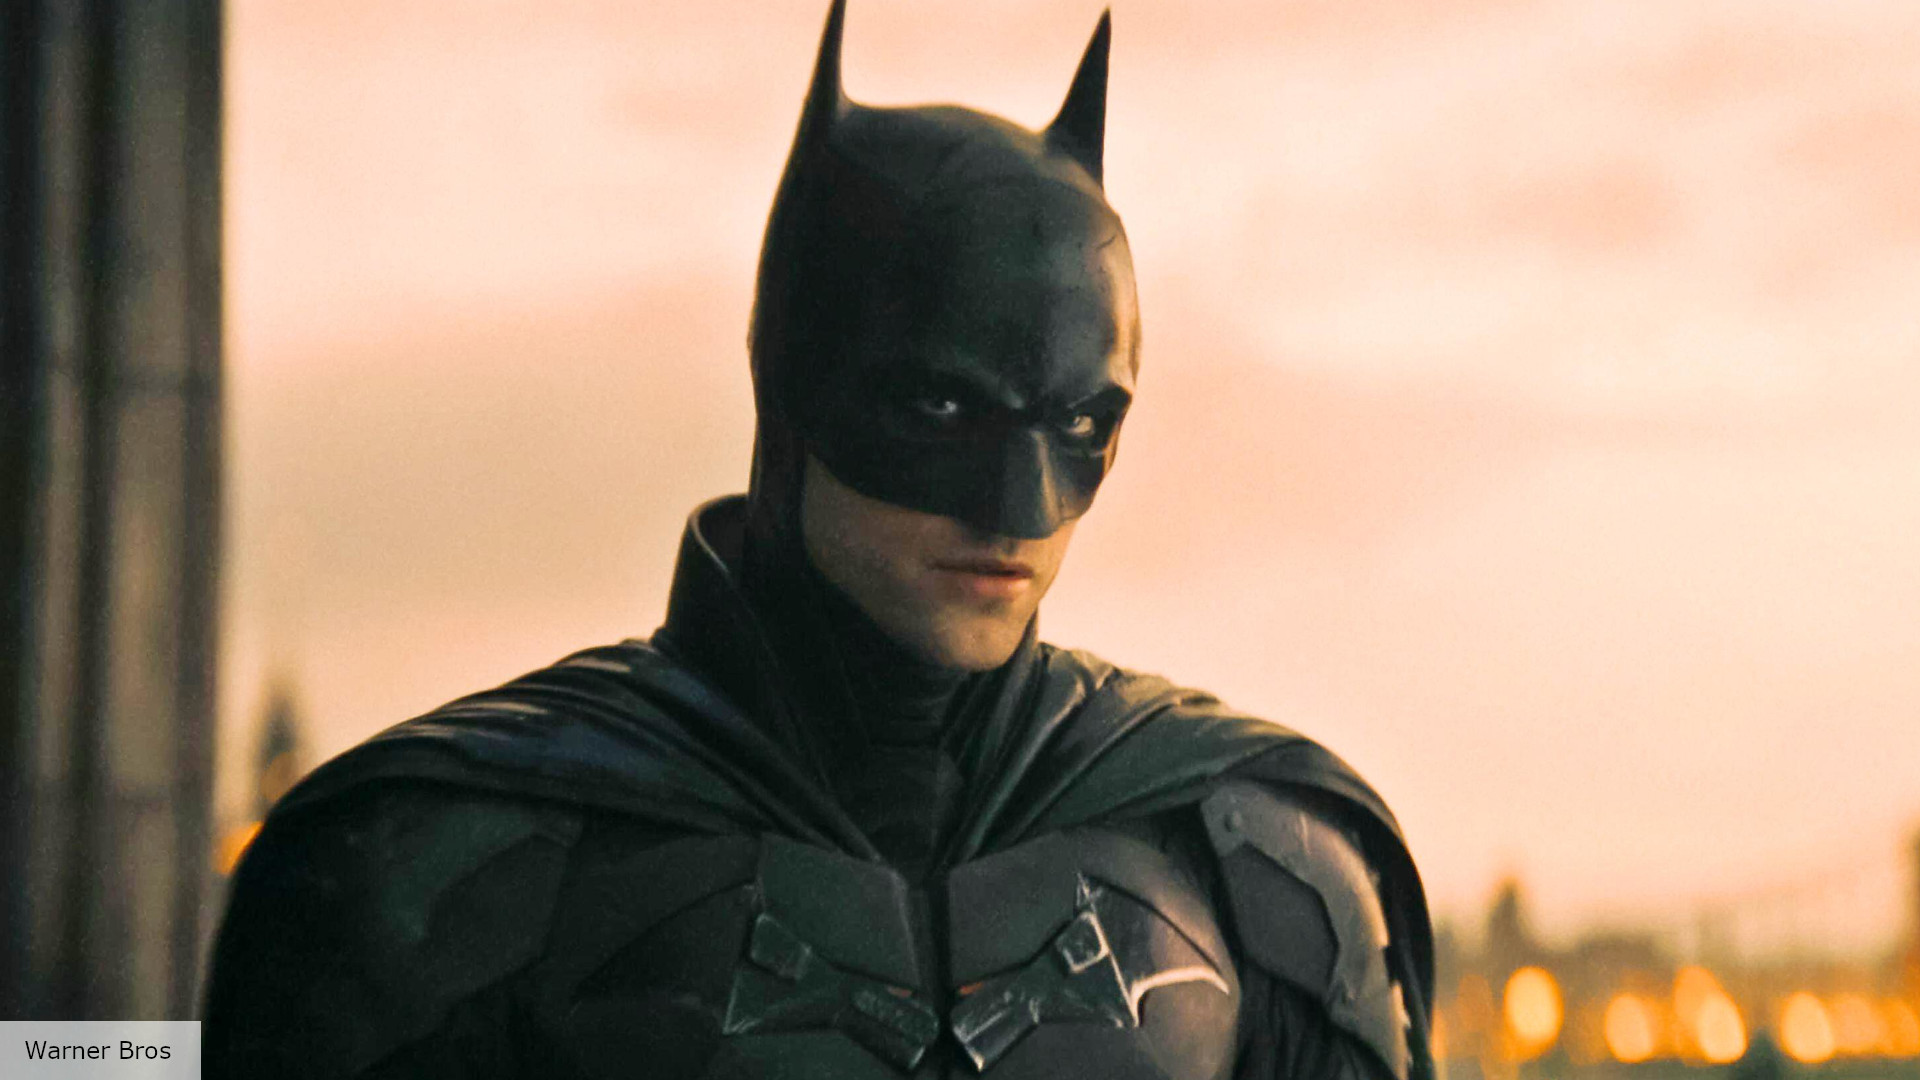 Robert Pattinson's Batman could have bigger part in DCEU | The Digital Fix